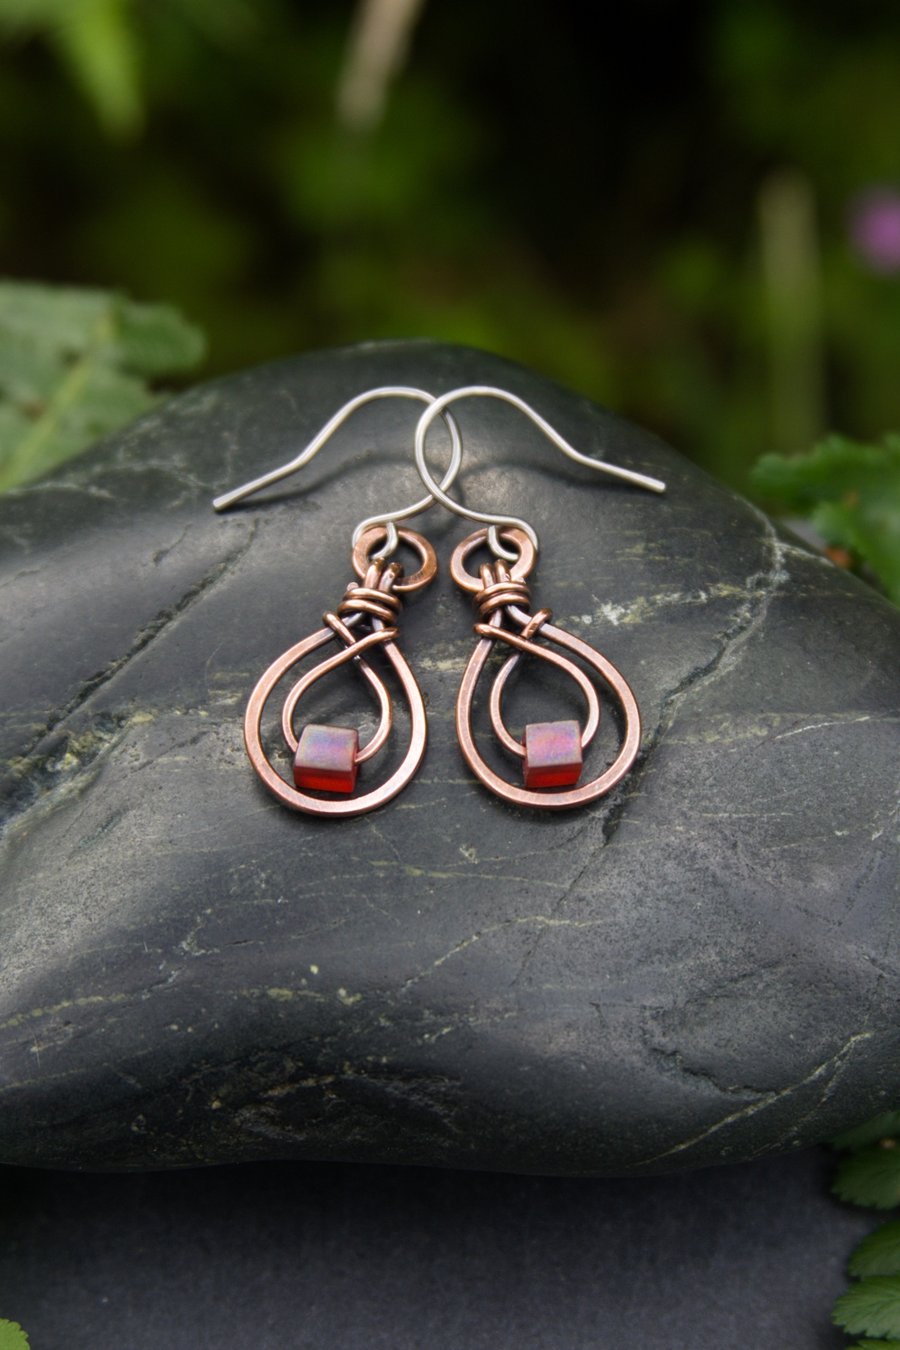 SALE - Copper Teardrop Earrings with Glass Cubes